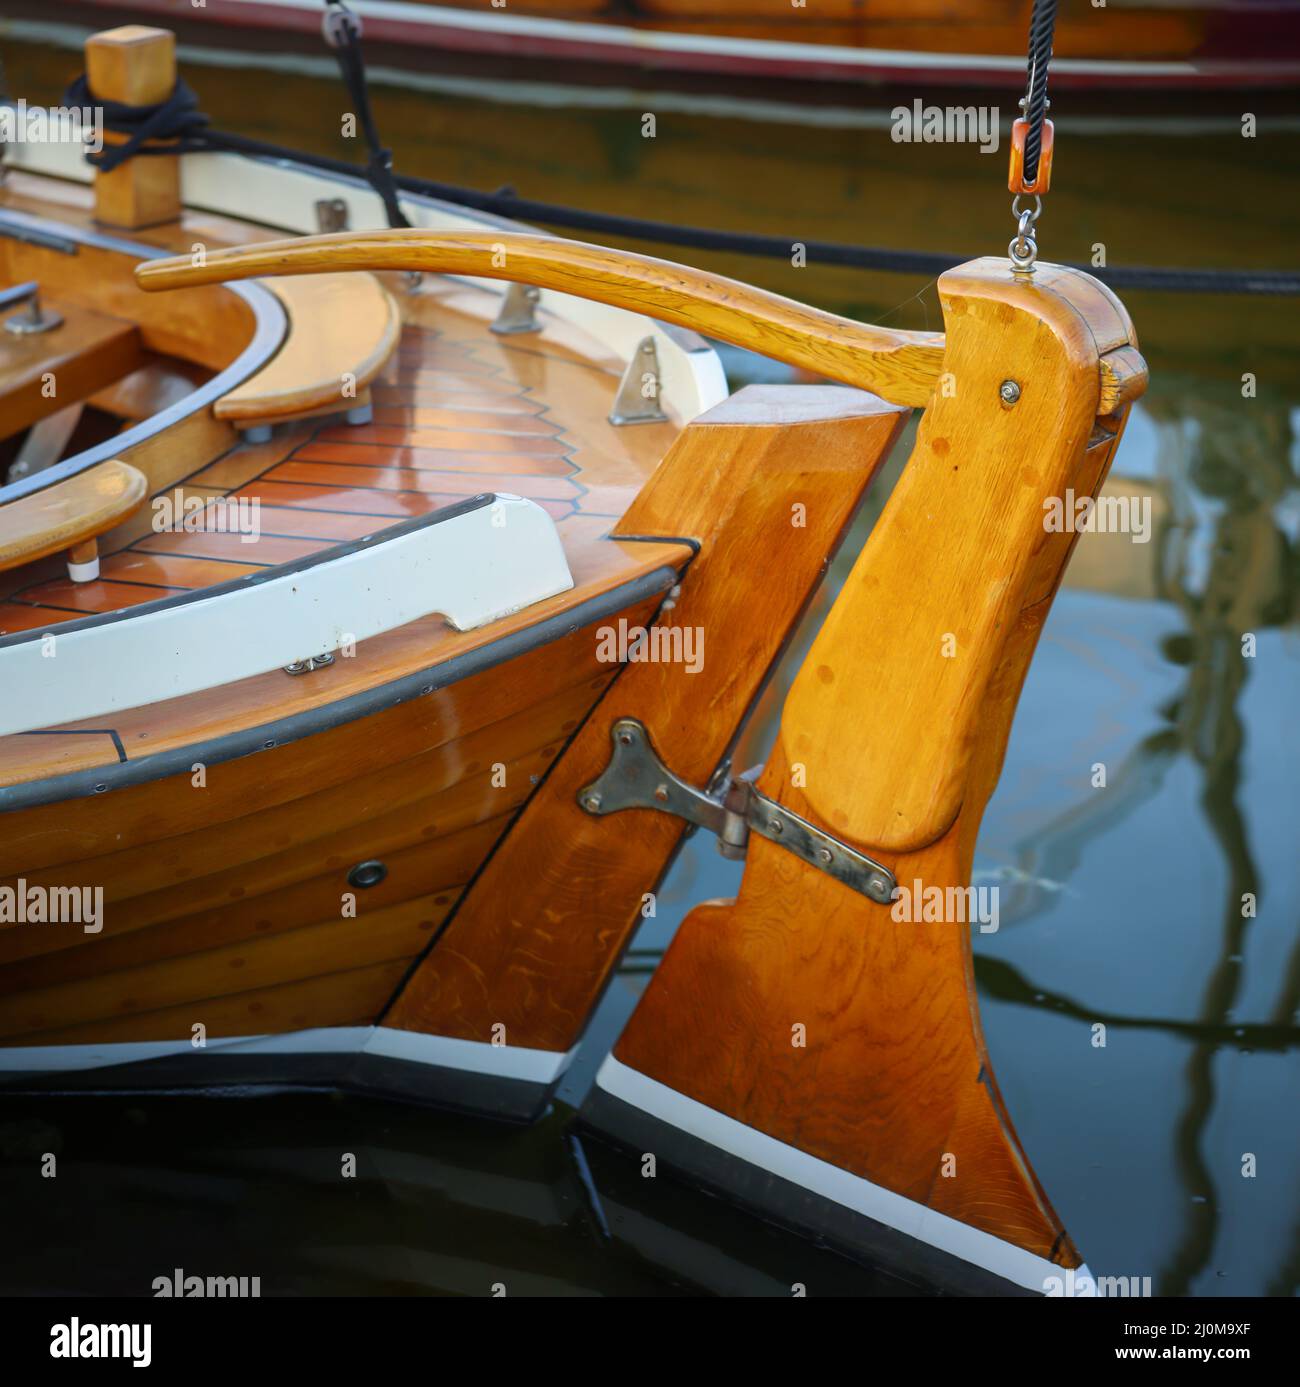 Dettagli di una barca a vela. una barca a vela con scafo in legno lavorato al meglio. Foto Stock